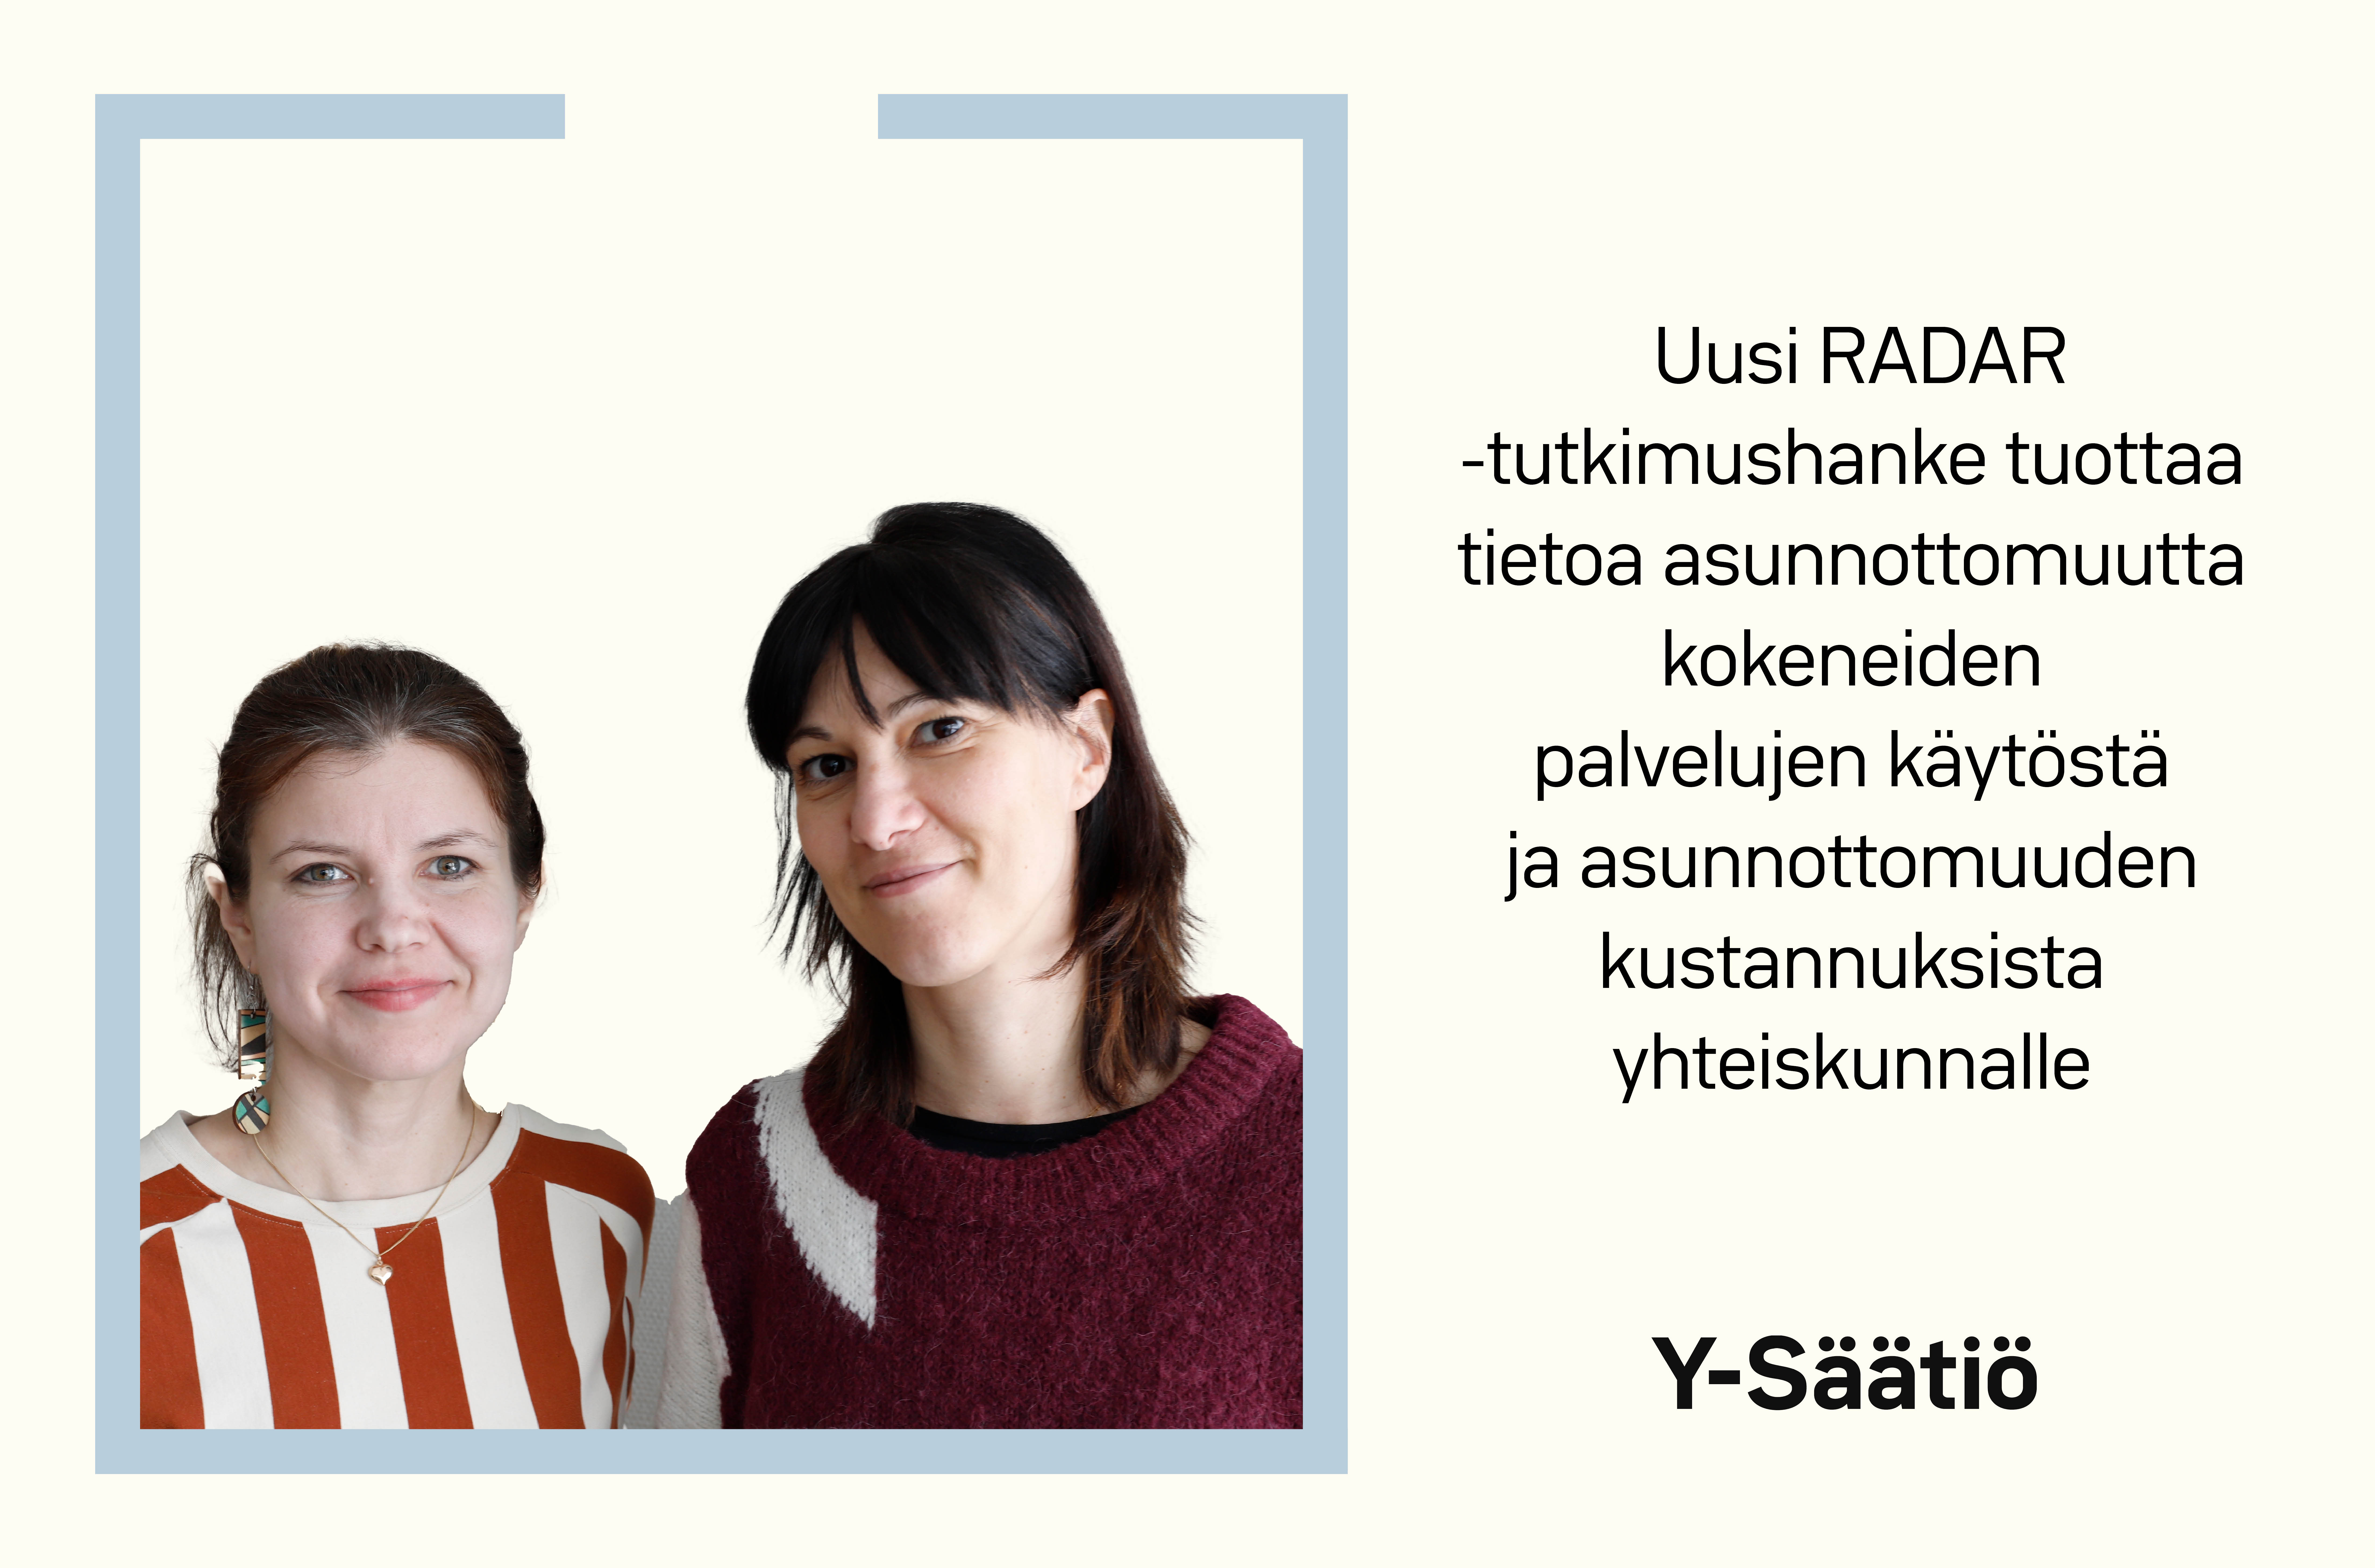 Kuvassa kuva tutkijoista Veera Niemestä ja Elisabetta Lenistä sekä teksti: Uusi Radar-tutkimushanke tuottaa tietoa asunnottomuutta kokeneiden palvelujen kätöstä ja asunnottomuuden kustannuksista yhteiskunnalle